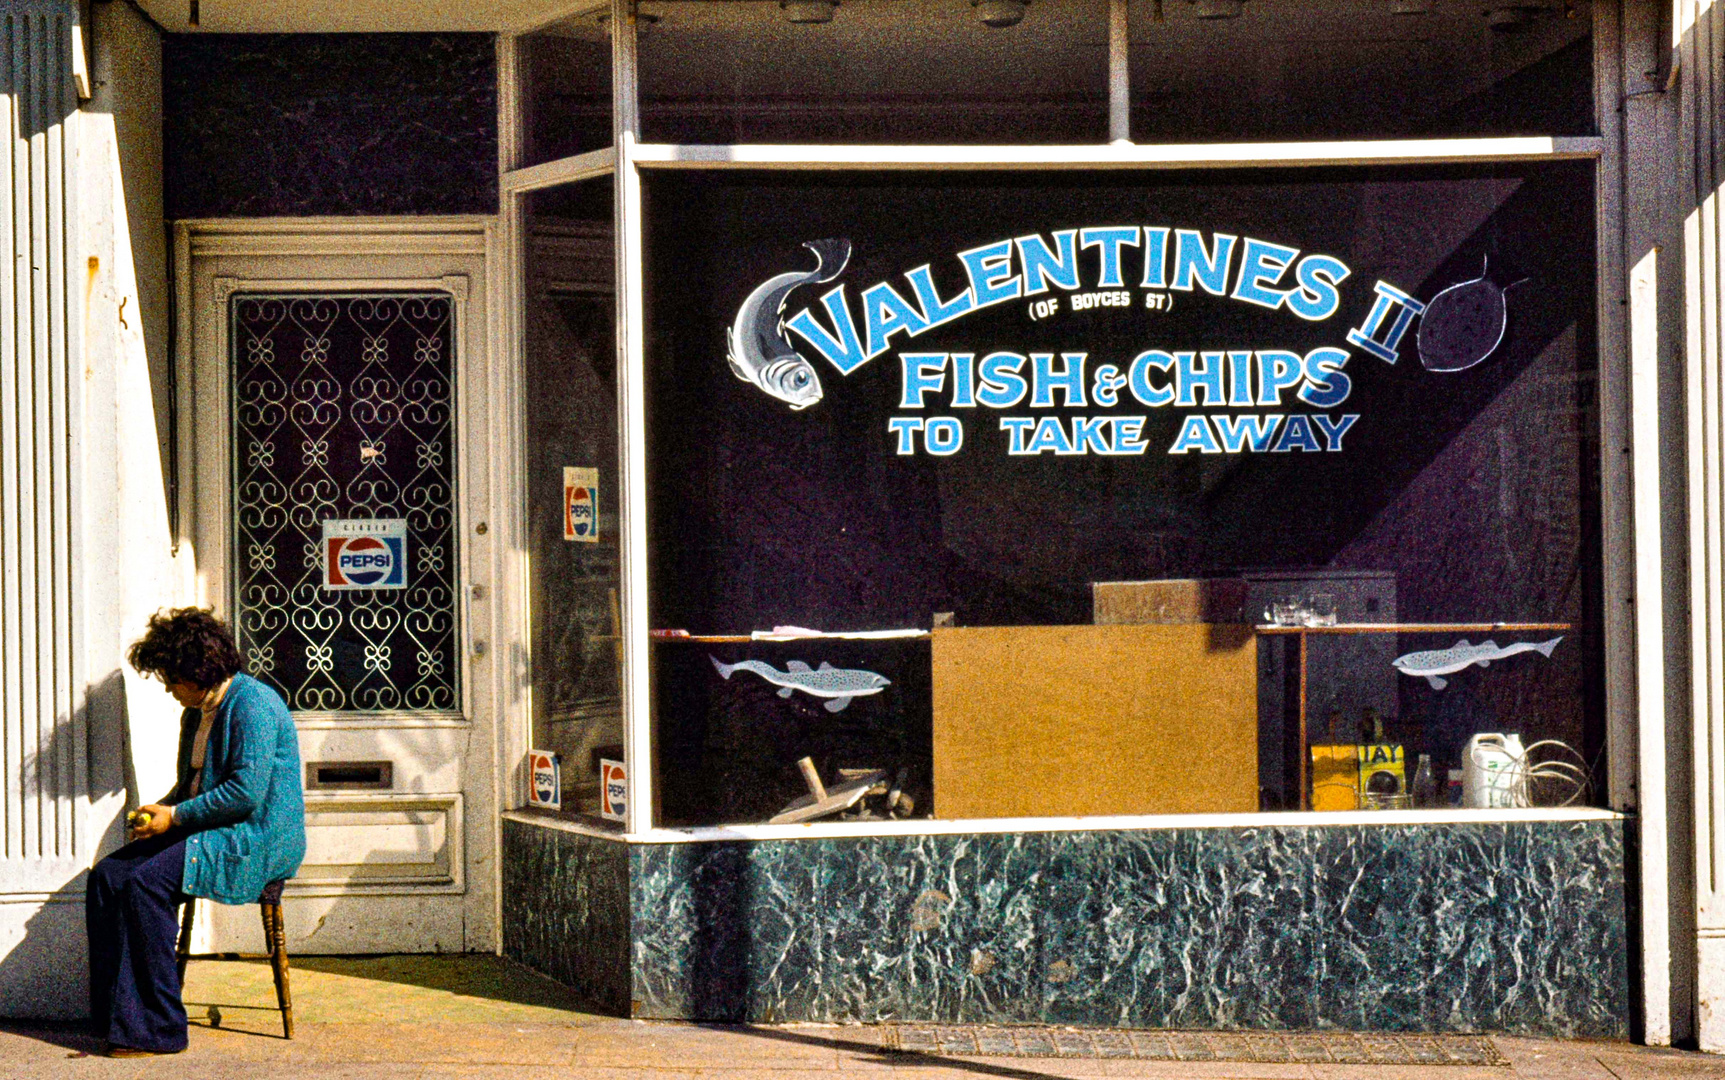 Valentines Fish & Chips